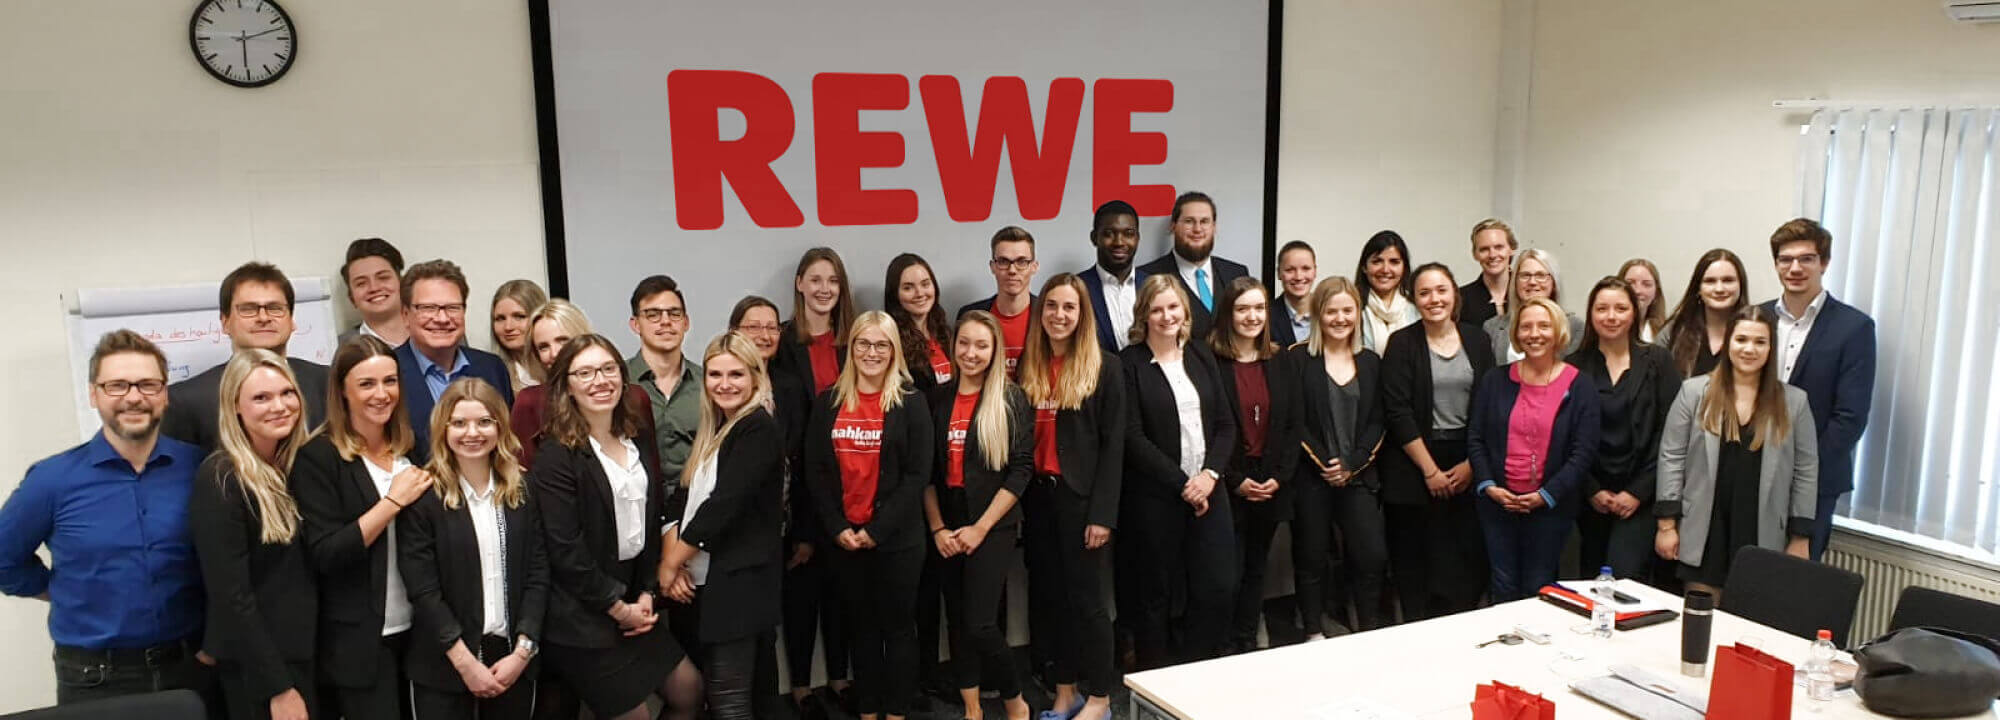 HR-Cases im Mittelpunkt: Gemeinsames Business Project mit REWE